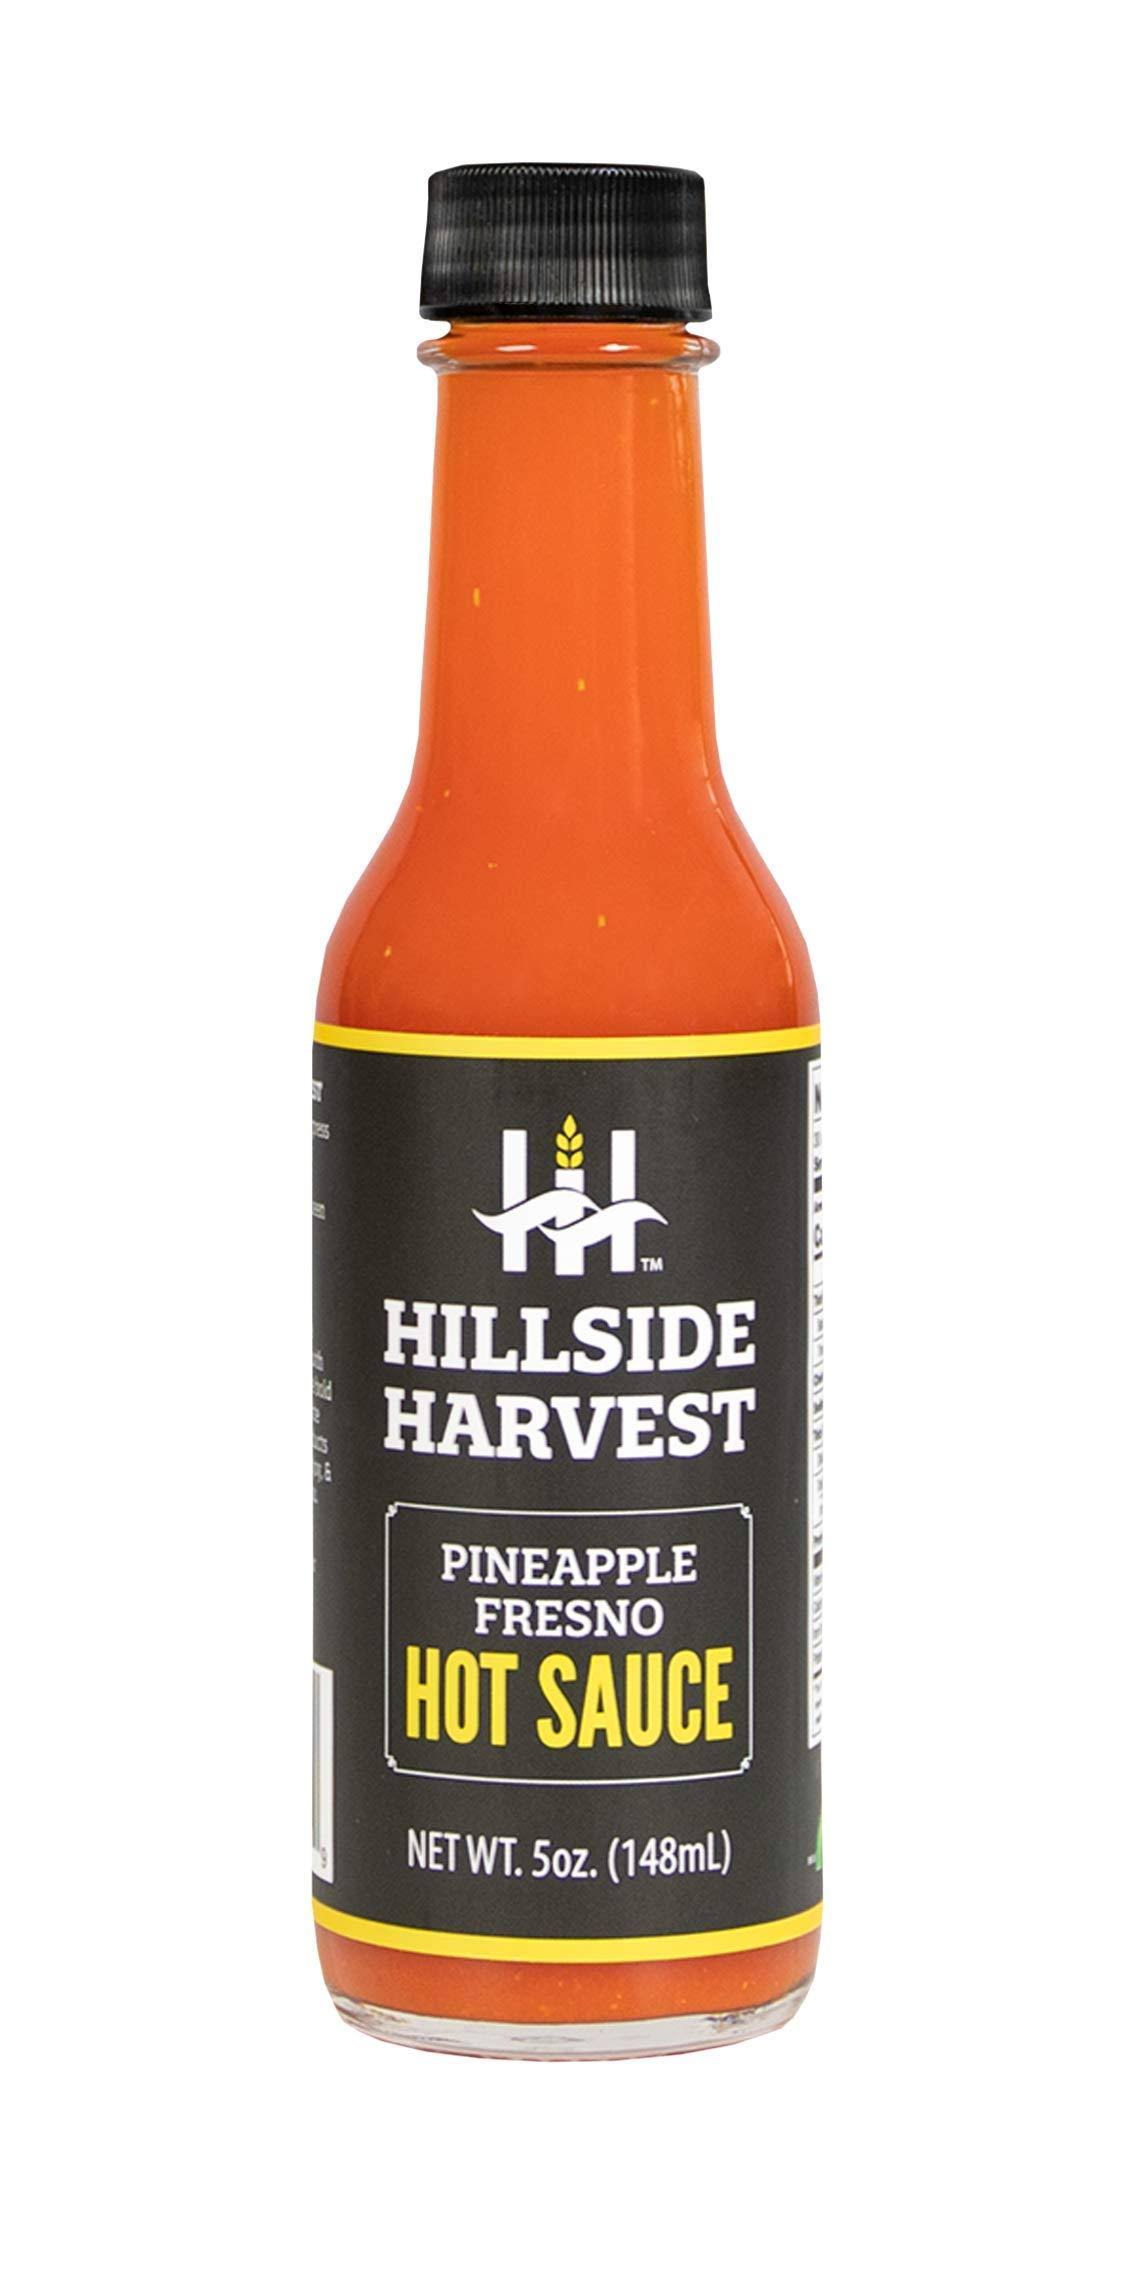 Hillside Harvest KHLV02305478 5 fl oz Pineapple Fresno Hot Sauce